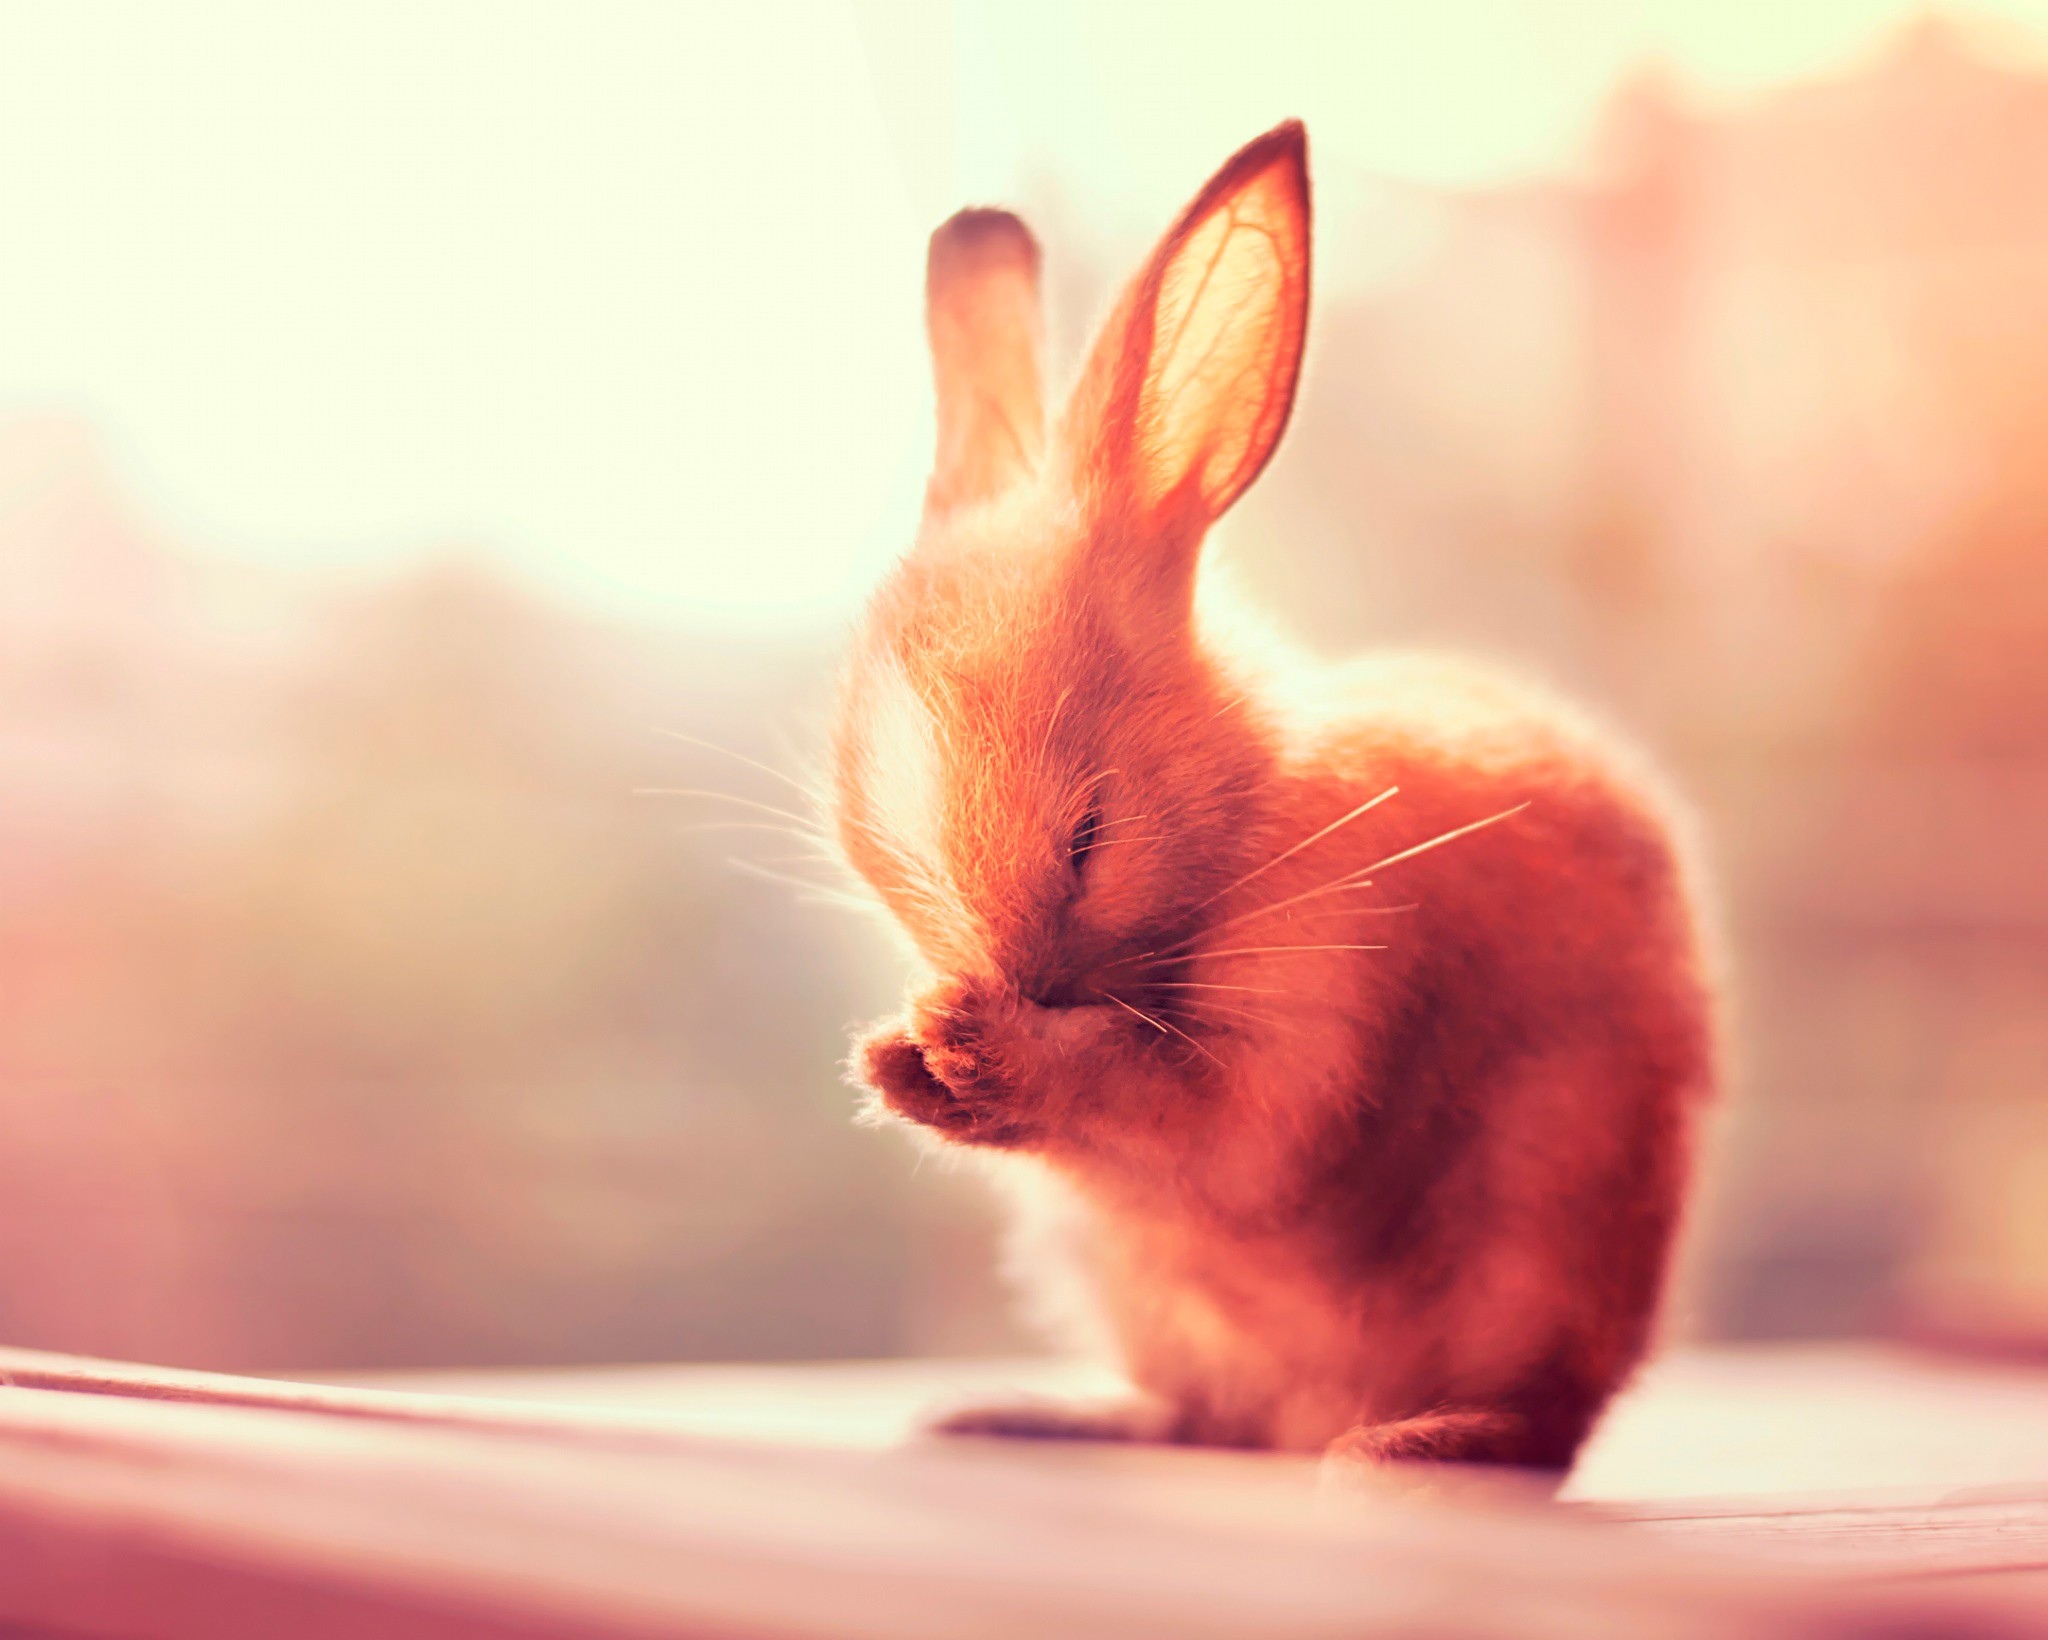 兔子的耳朵壁纸1600x900分辨率查看